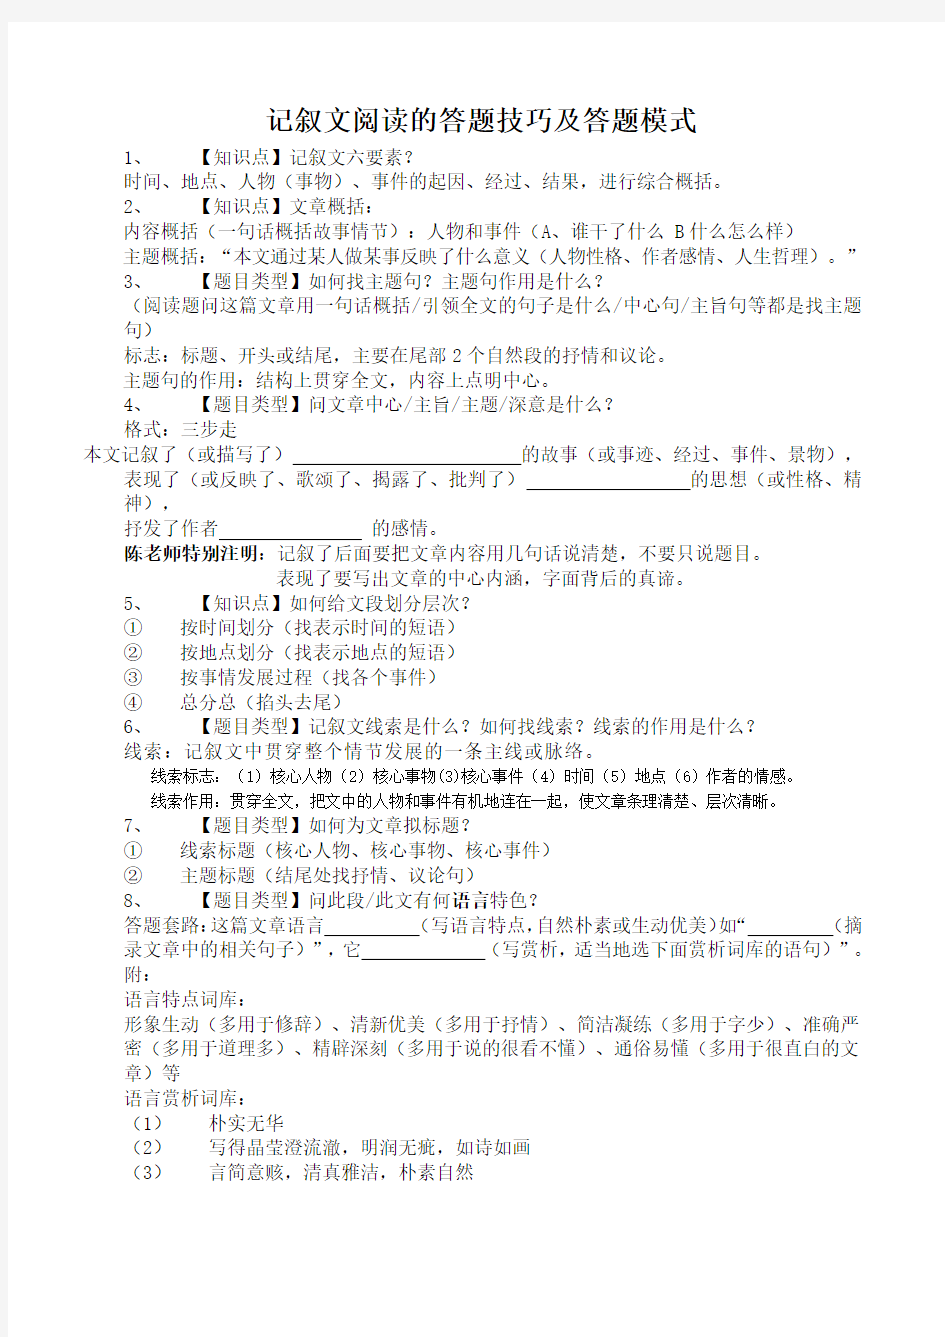 (完整)初中语文记叙文阅读的答题技巧及答题模式